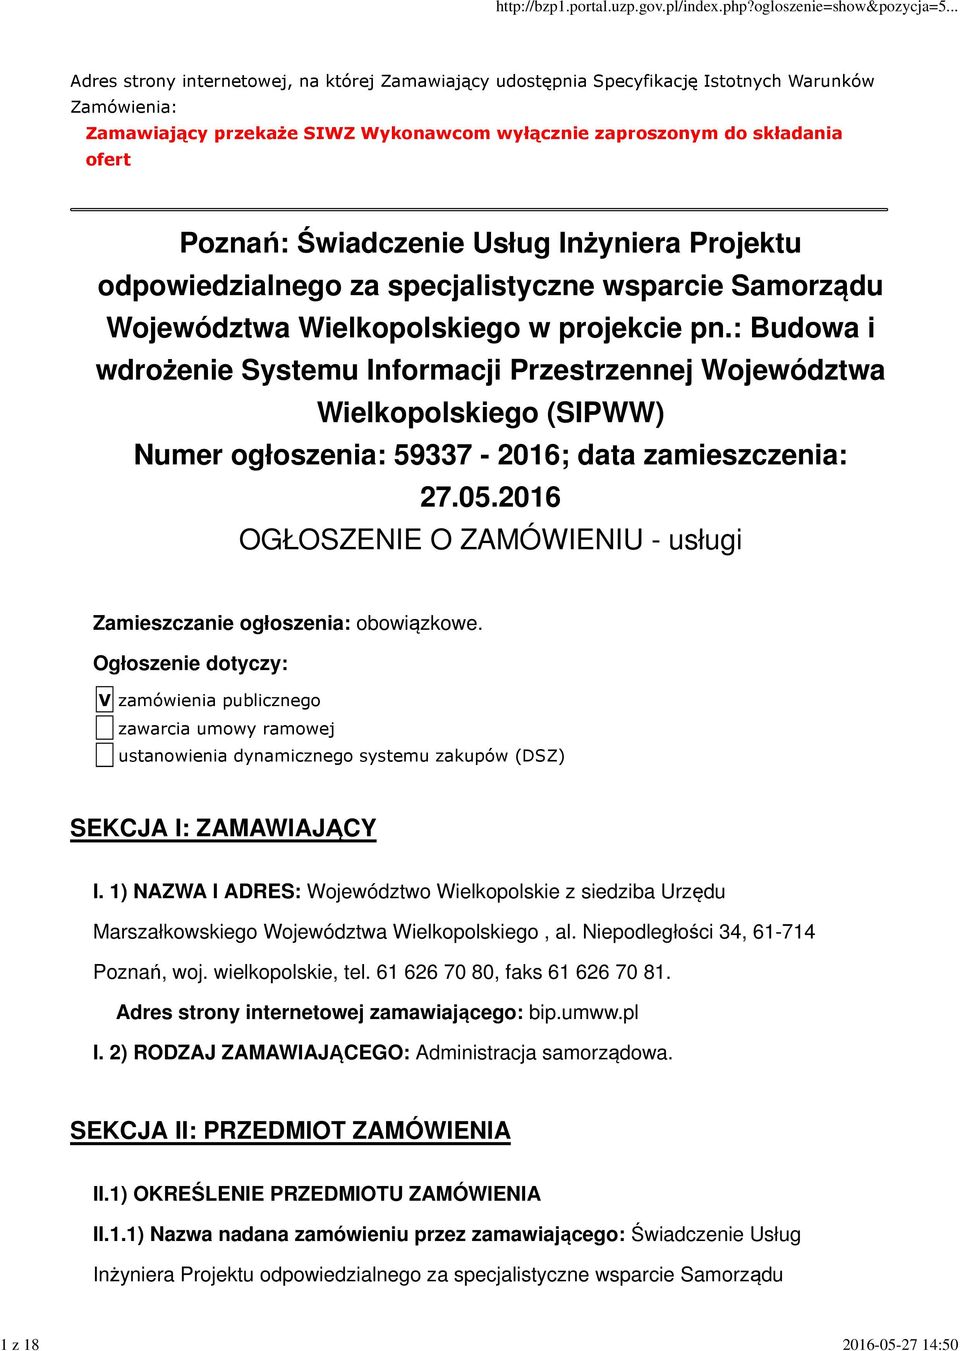 : Budowa i wdrożenie Systemu Informacji Przestrzennej Województwa Wielkopolskiego (SIPWW) Numer ogłoszenia: 59337-2016; data zamieszczenia: 27.05.